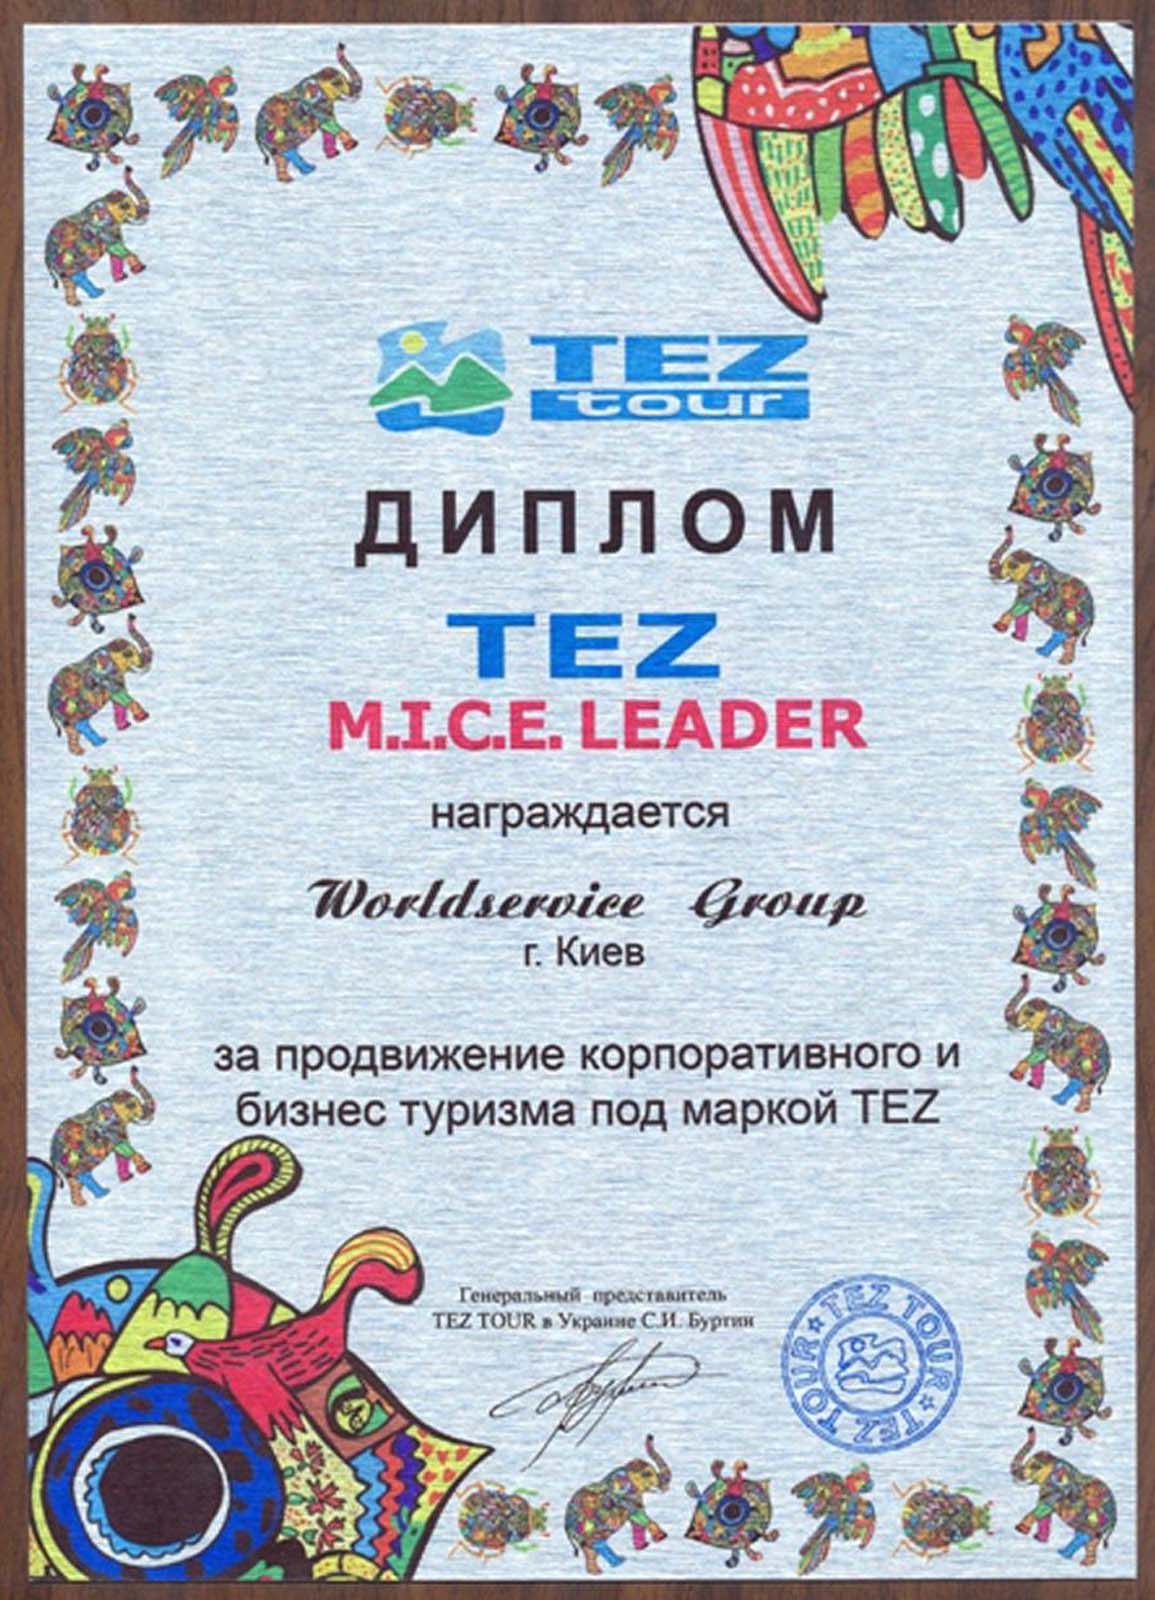 Worldservice group award